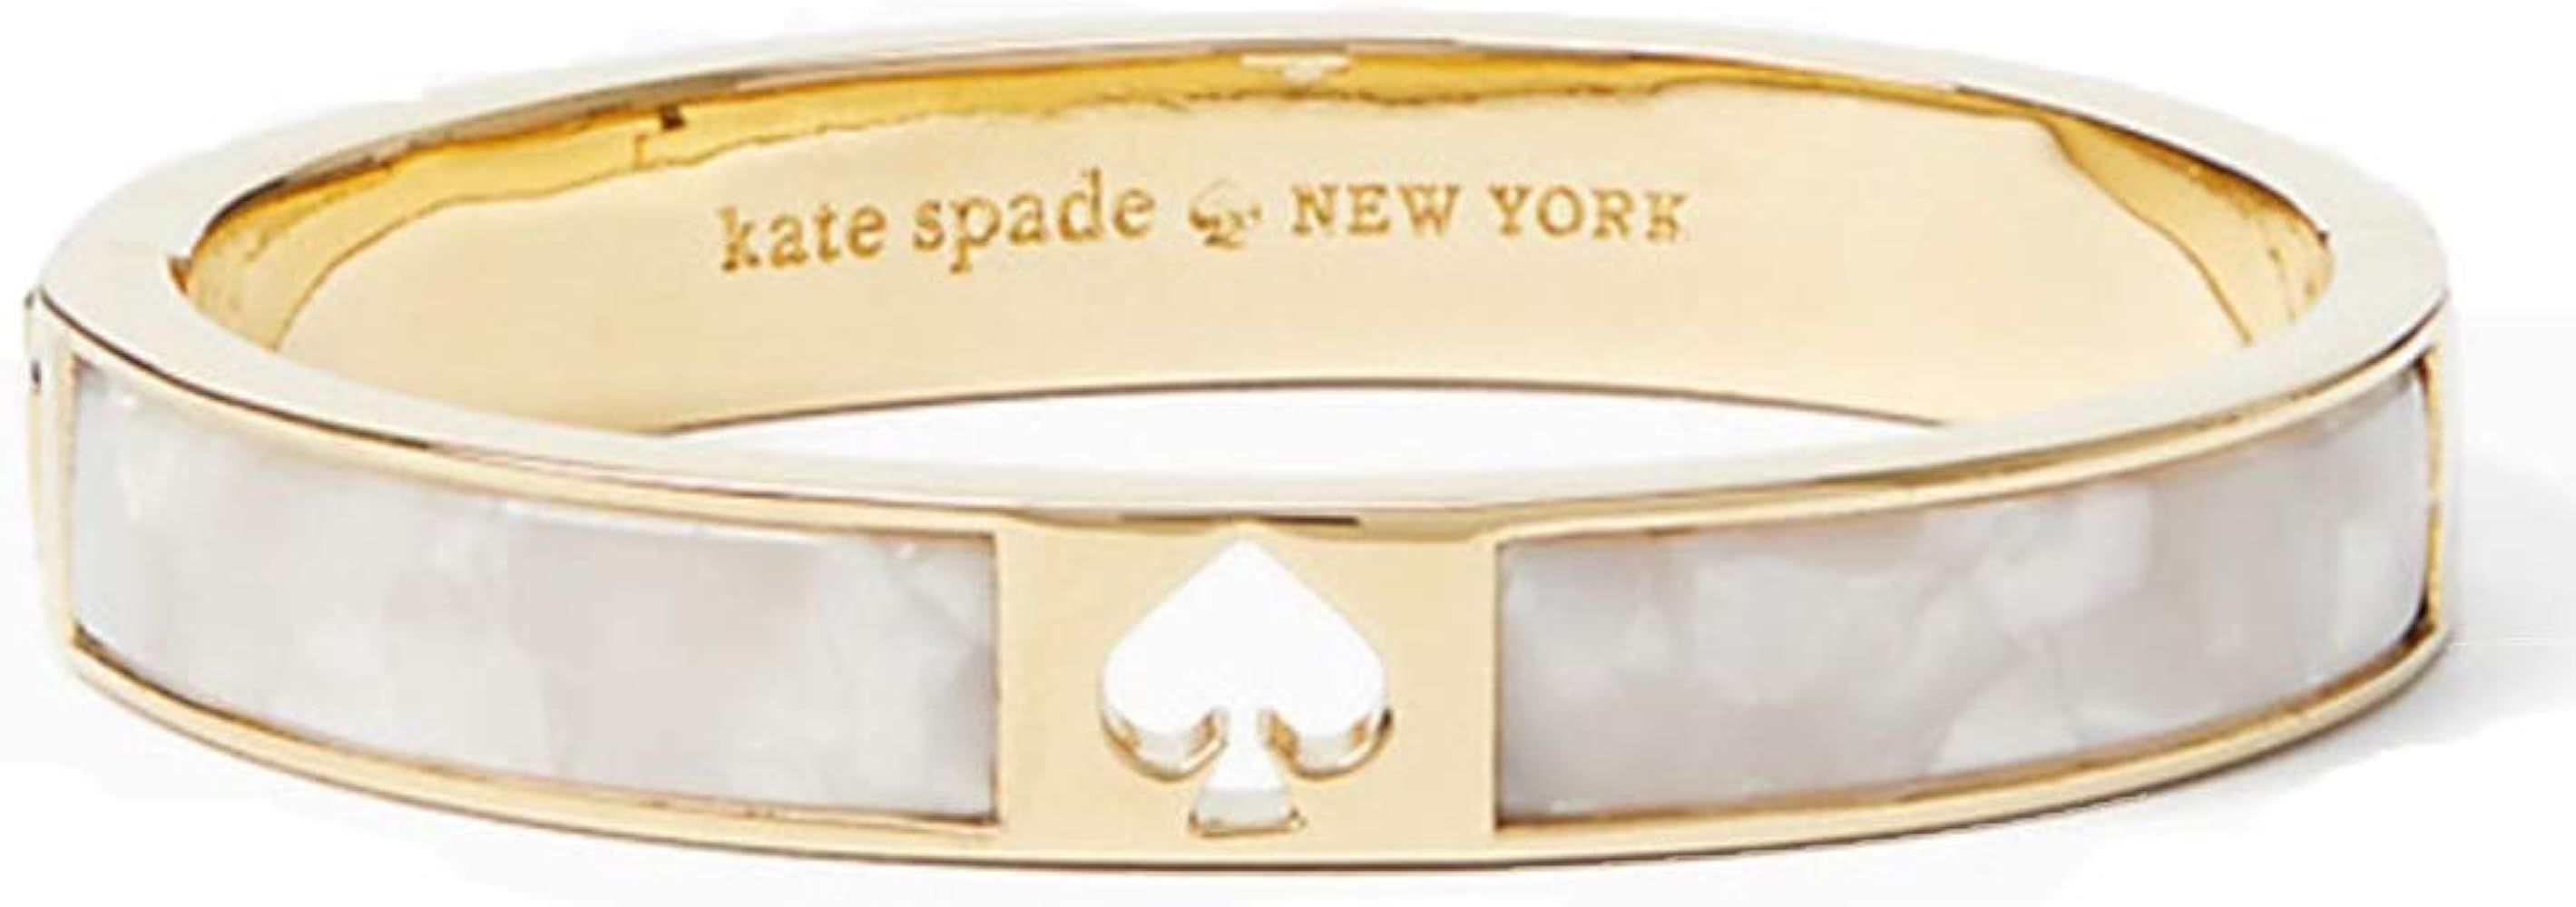 Kate Spade New York 'Hole Punch Spade Hinge Bangle' Pearl Bracelet | Amazon (US)